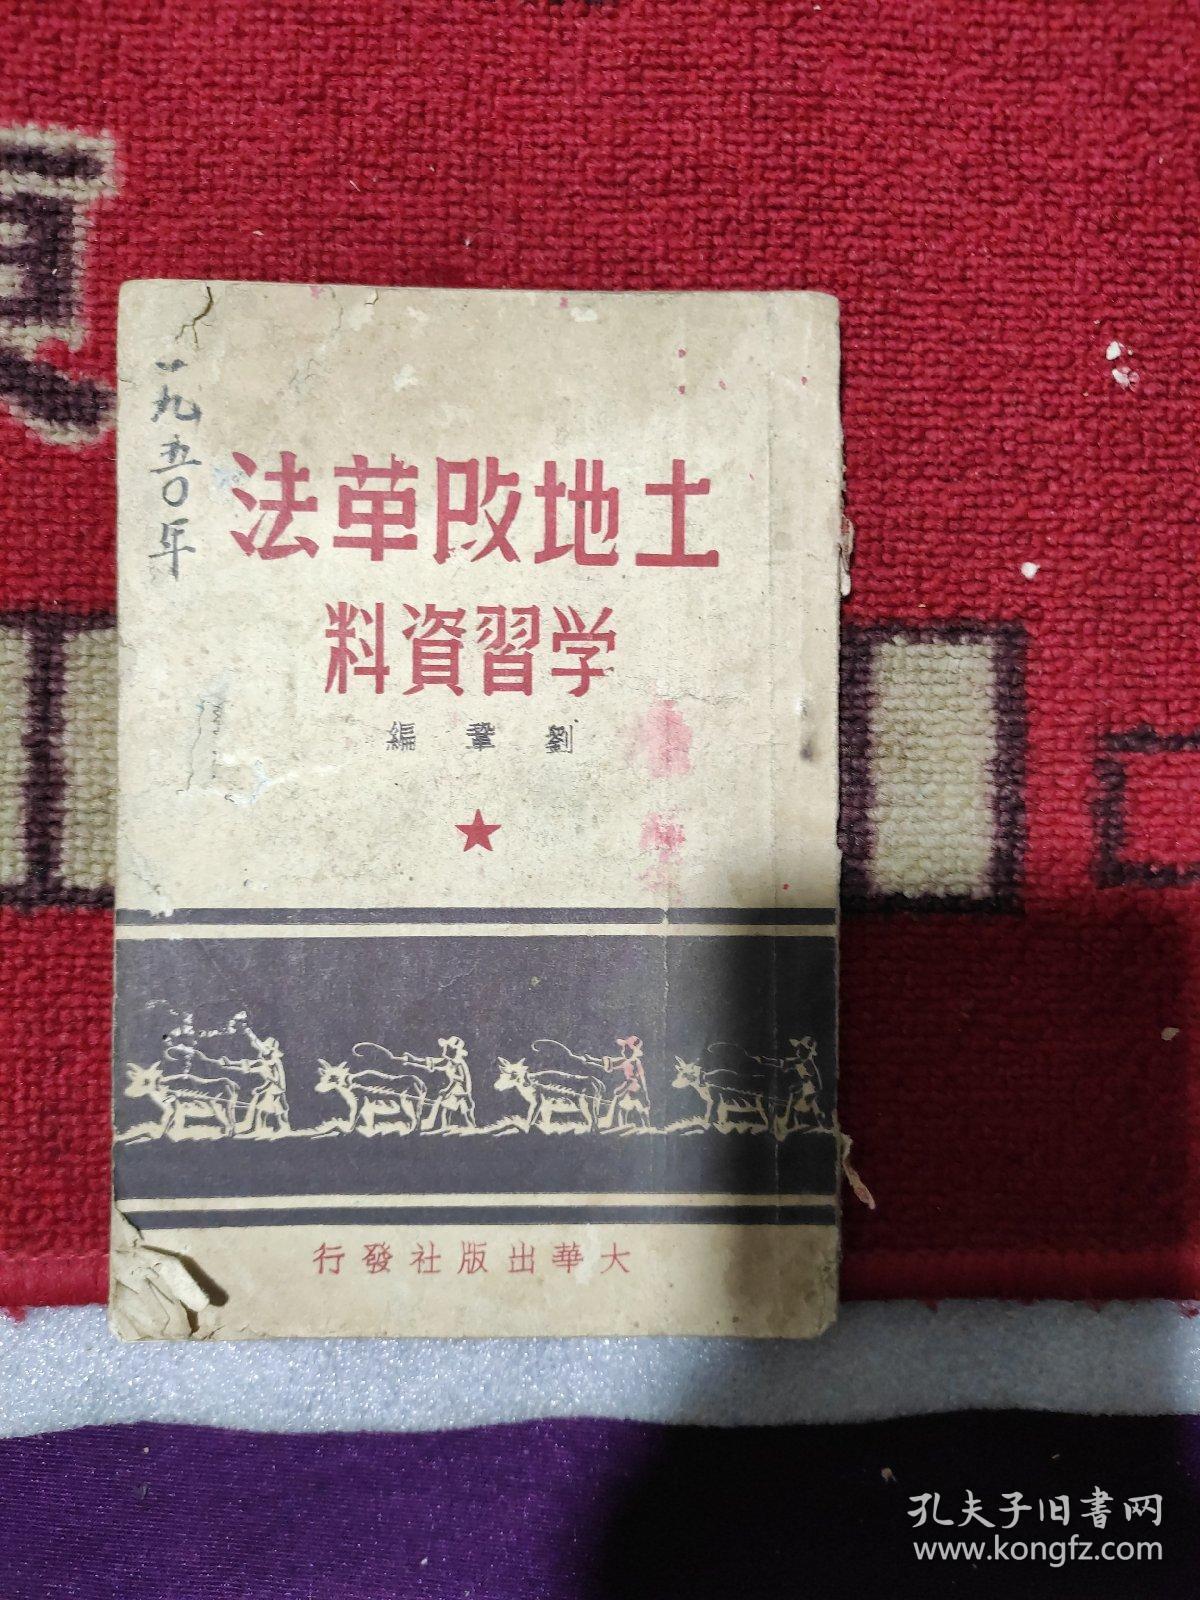 《土地改革法学習资料》1950年7月刘巩编